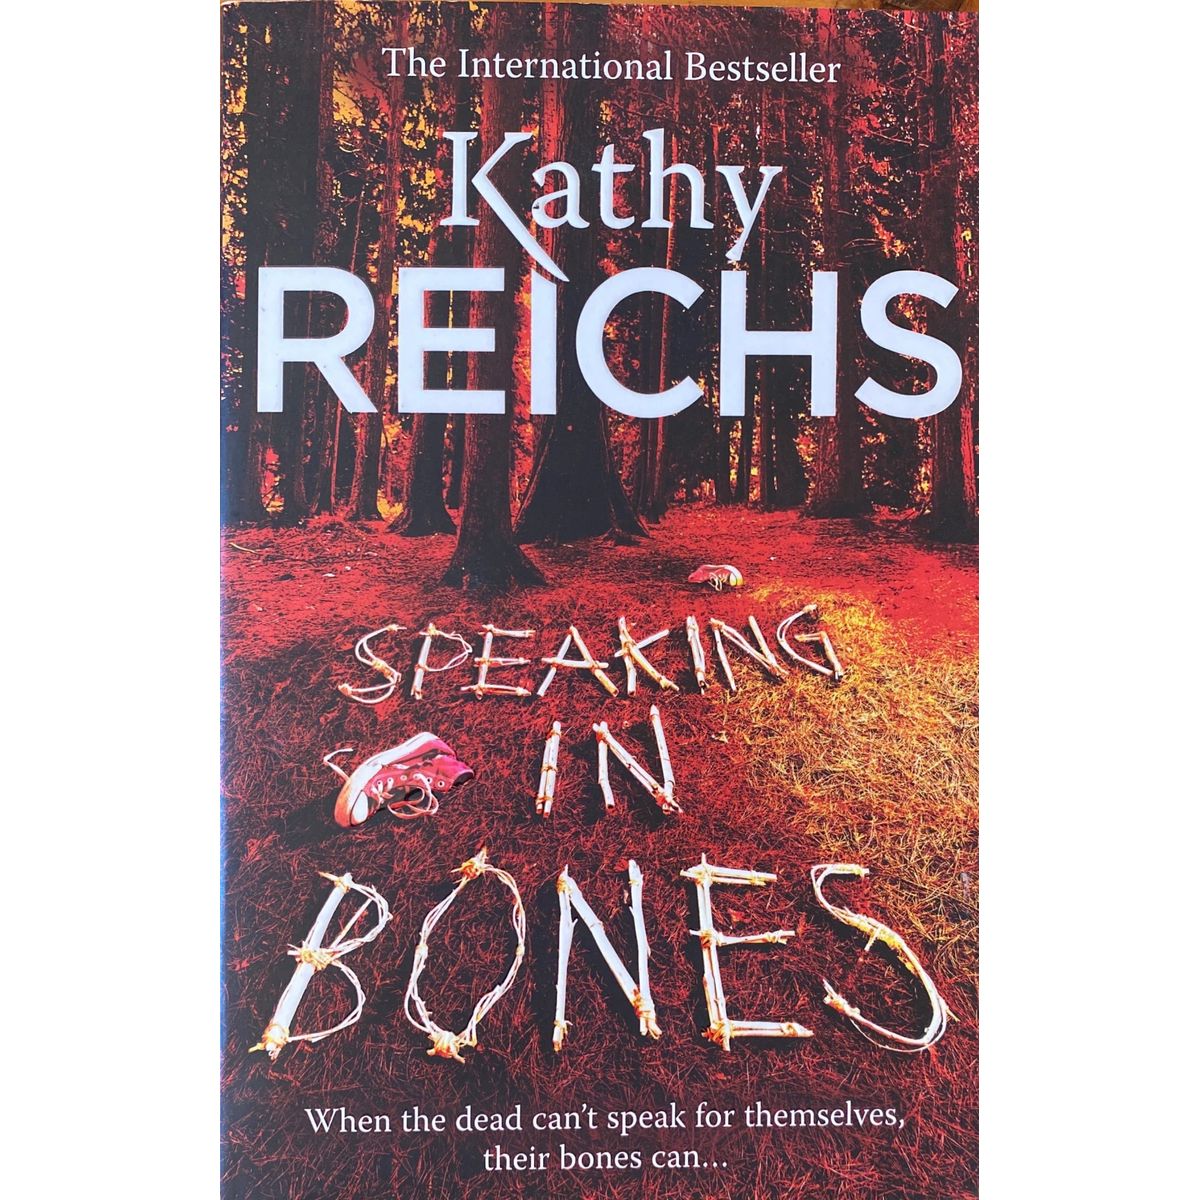 ISBN: 9780434021208 / 0434021202 - Speaking in Bones by Kathy Reichs [2015]